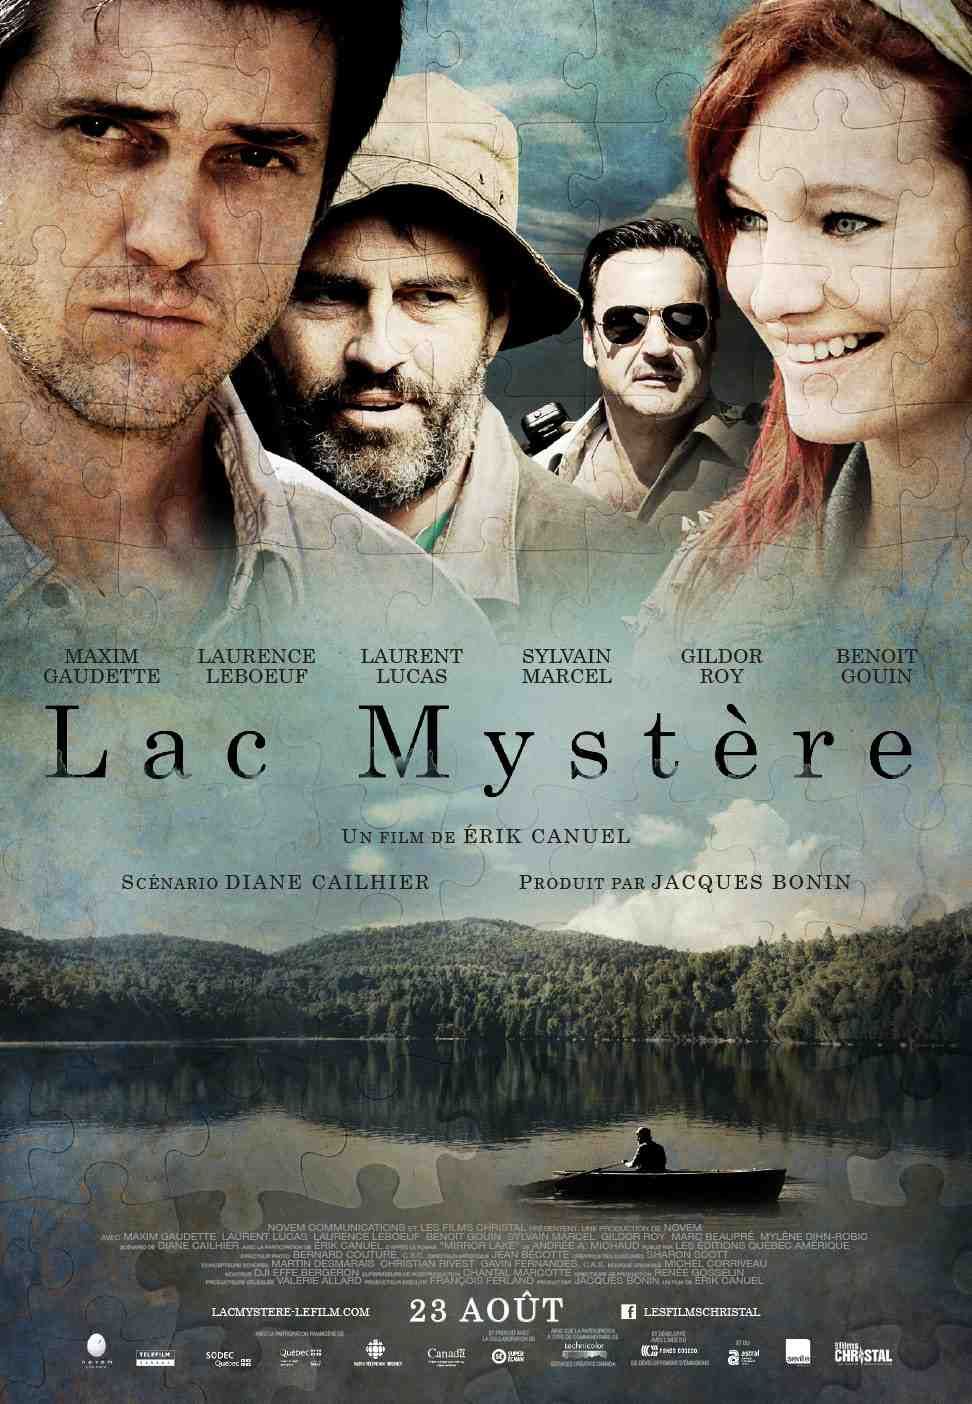 Lac mystre (2012)